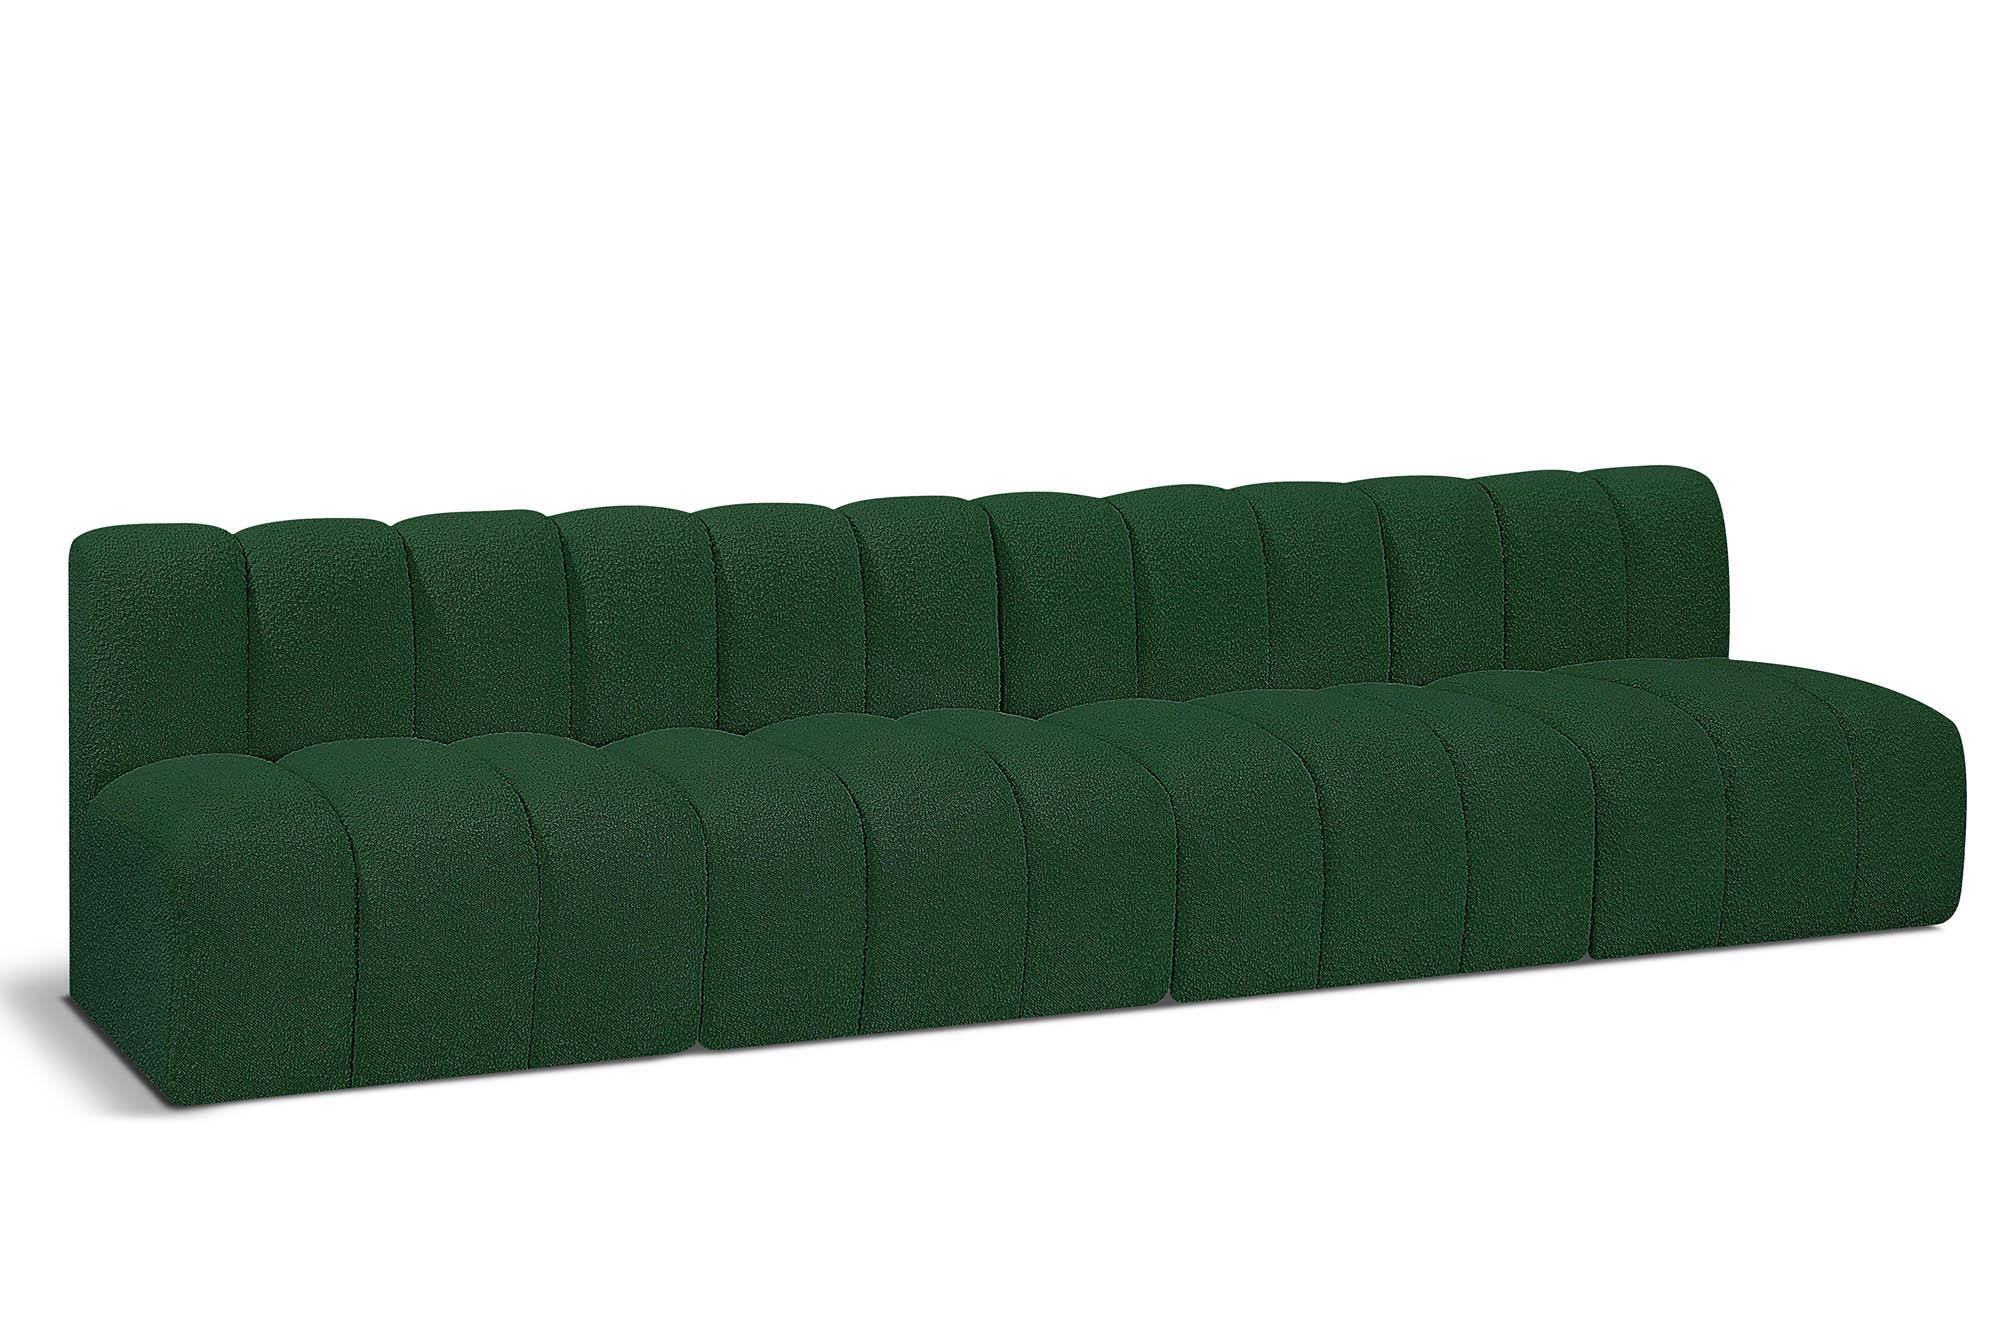 Contemporary, Modern Modular Sectional Sofa ARC 102Green-S4E 102Green-S4E in Green 